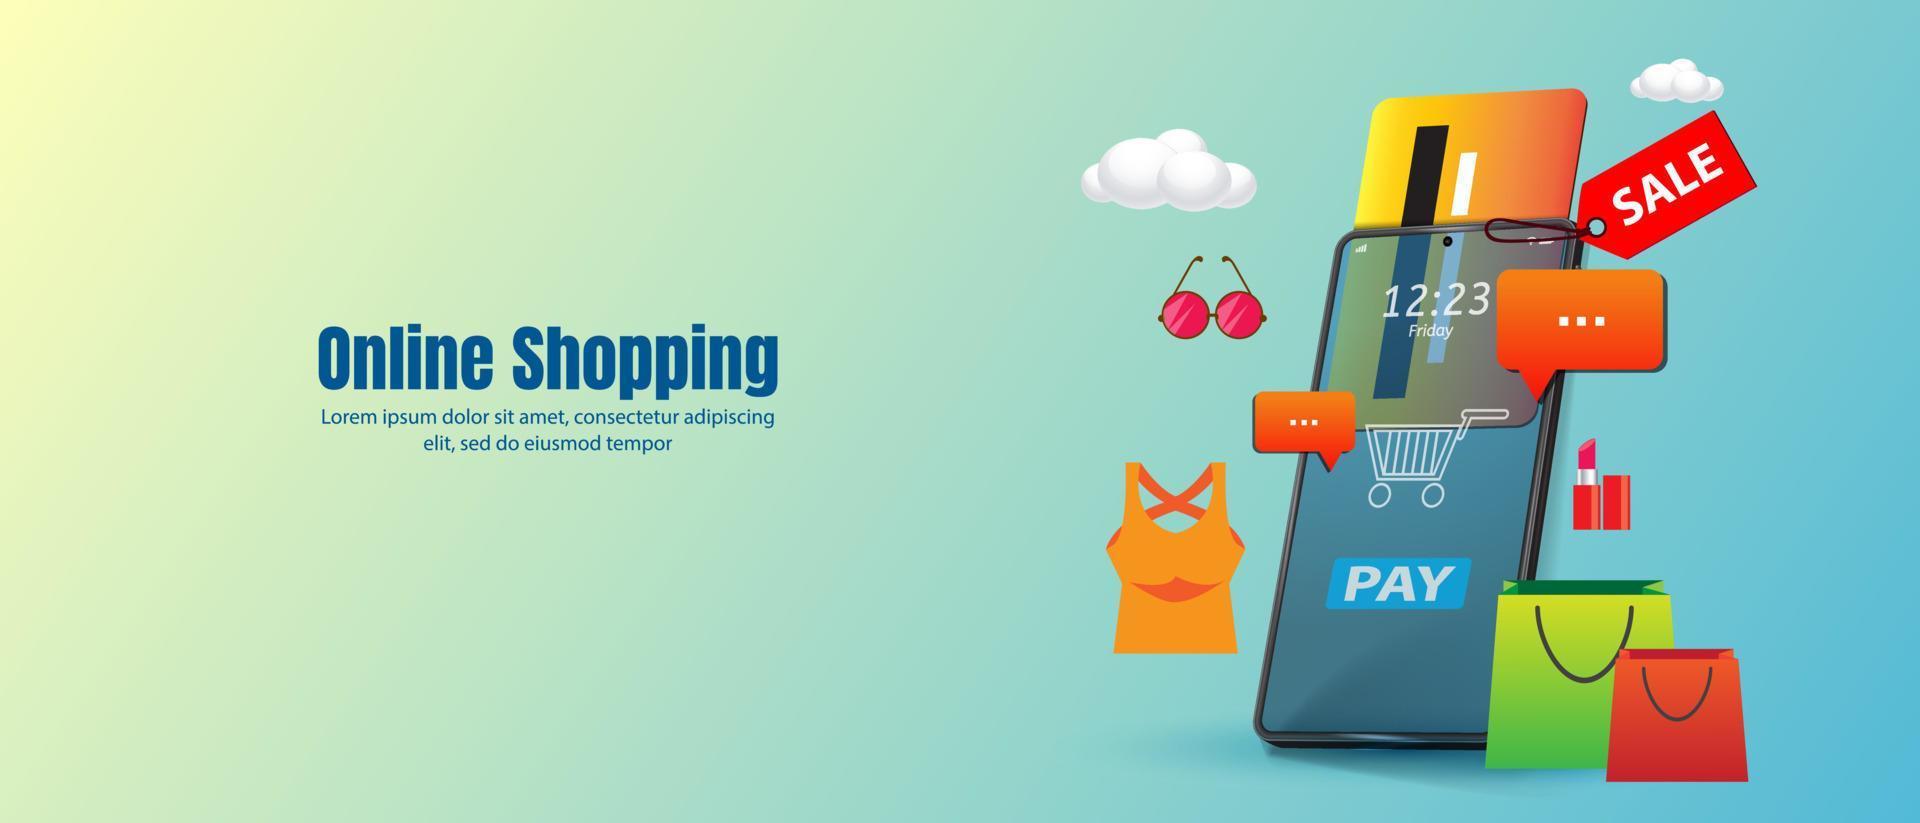 Online-Shopping-Vektor-Illustration E-Commerce-Konzept. Handy mit Kreditkarte vektor